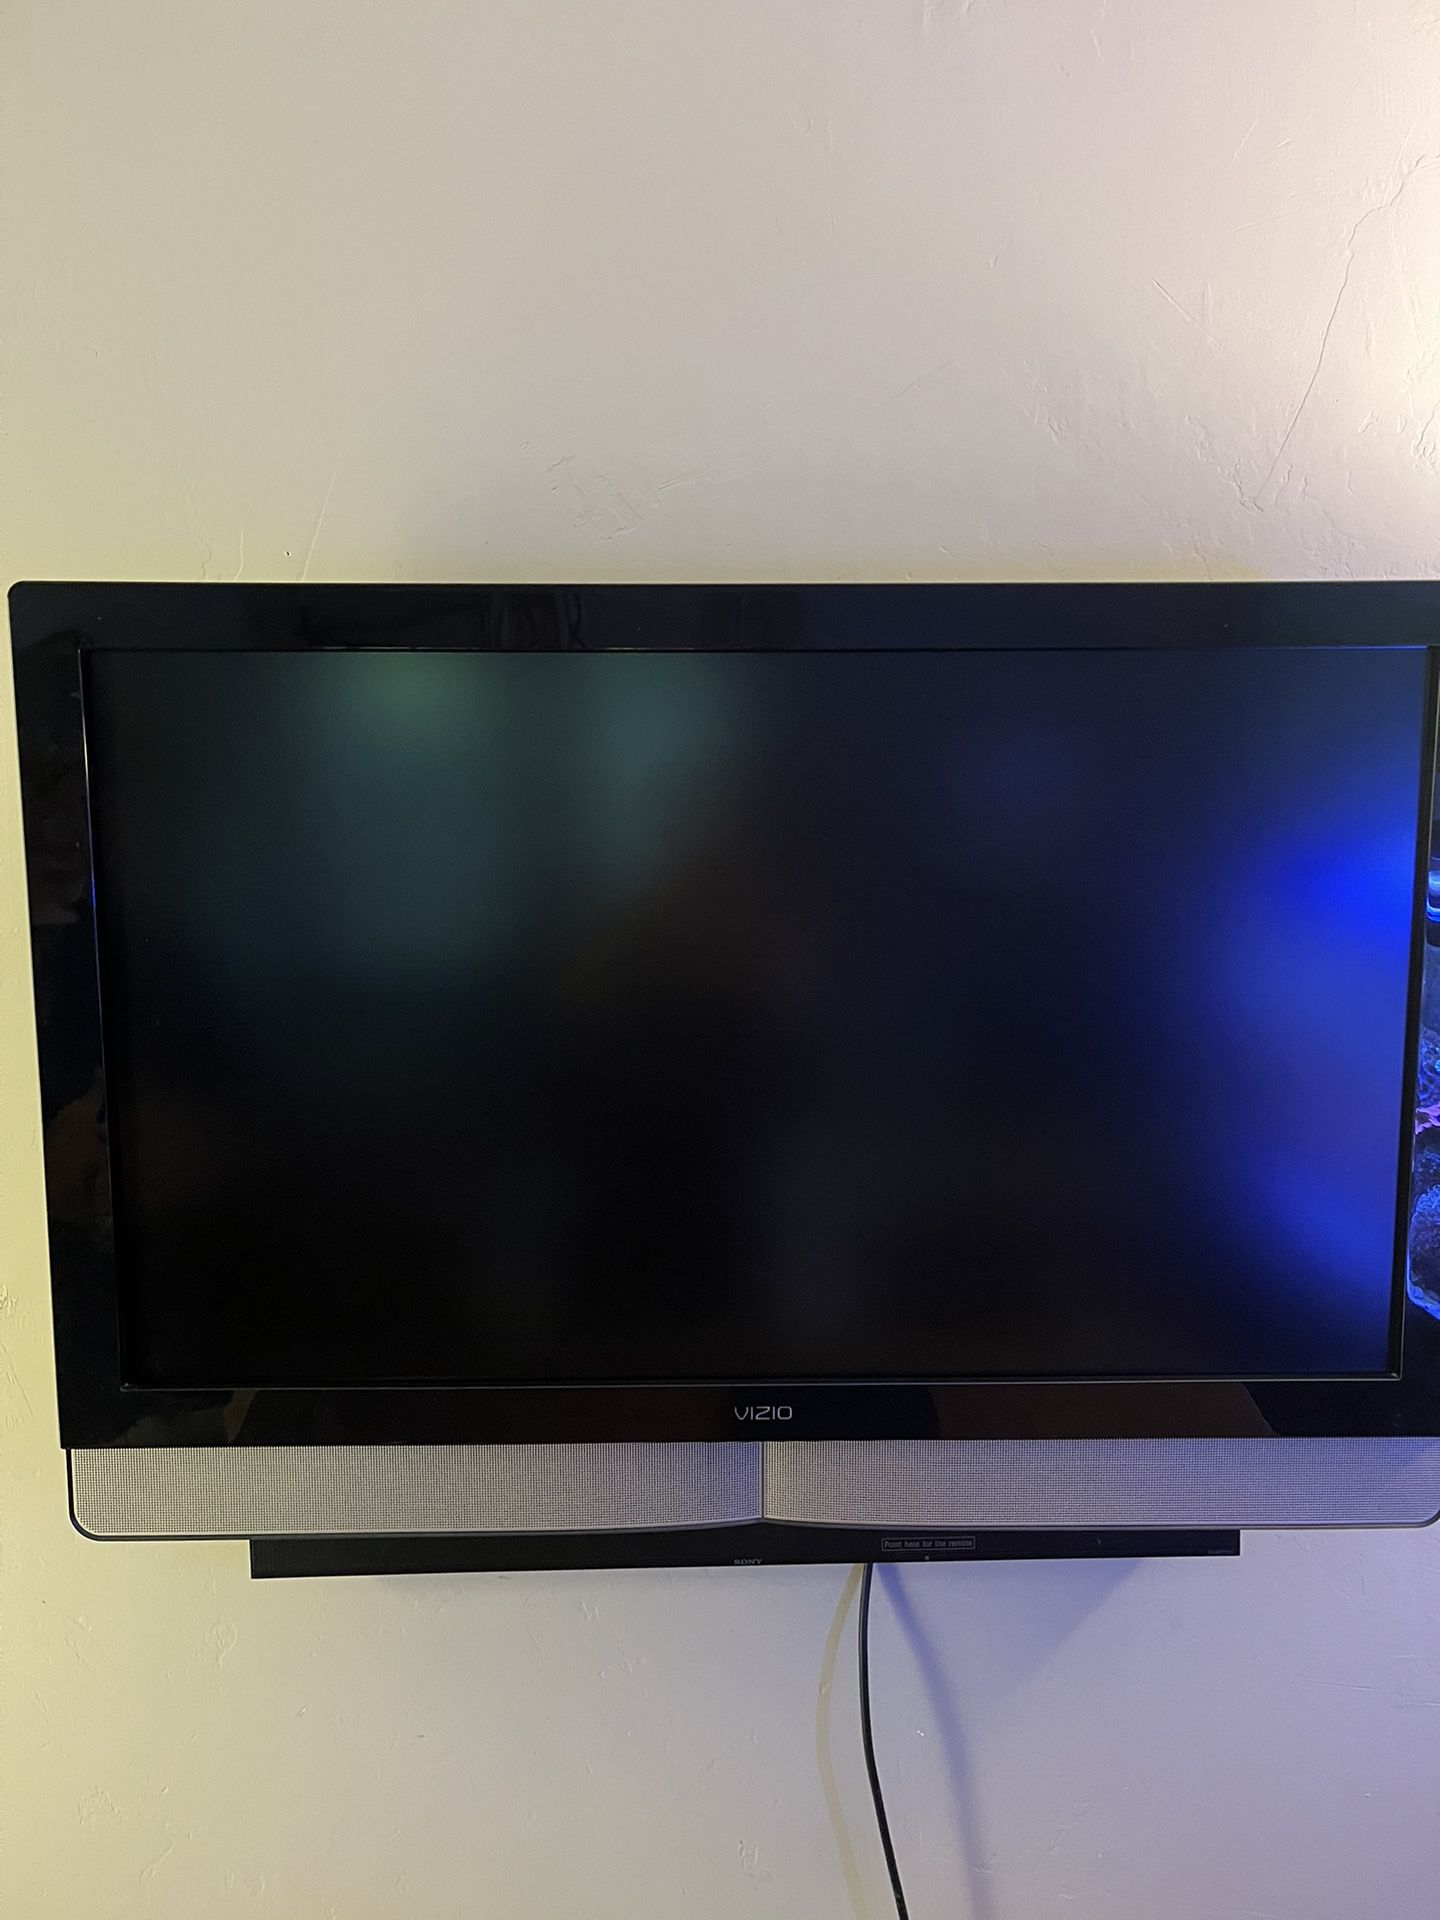 Vizio 42” Flatscreen TV